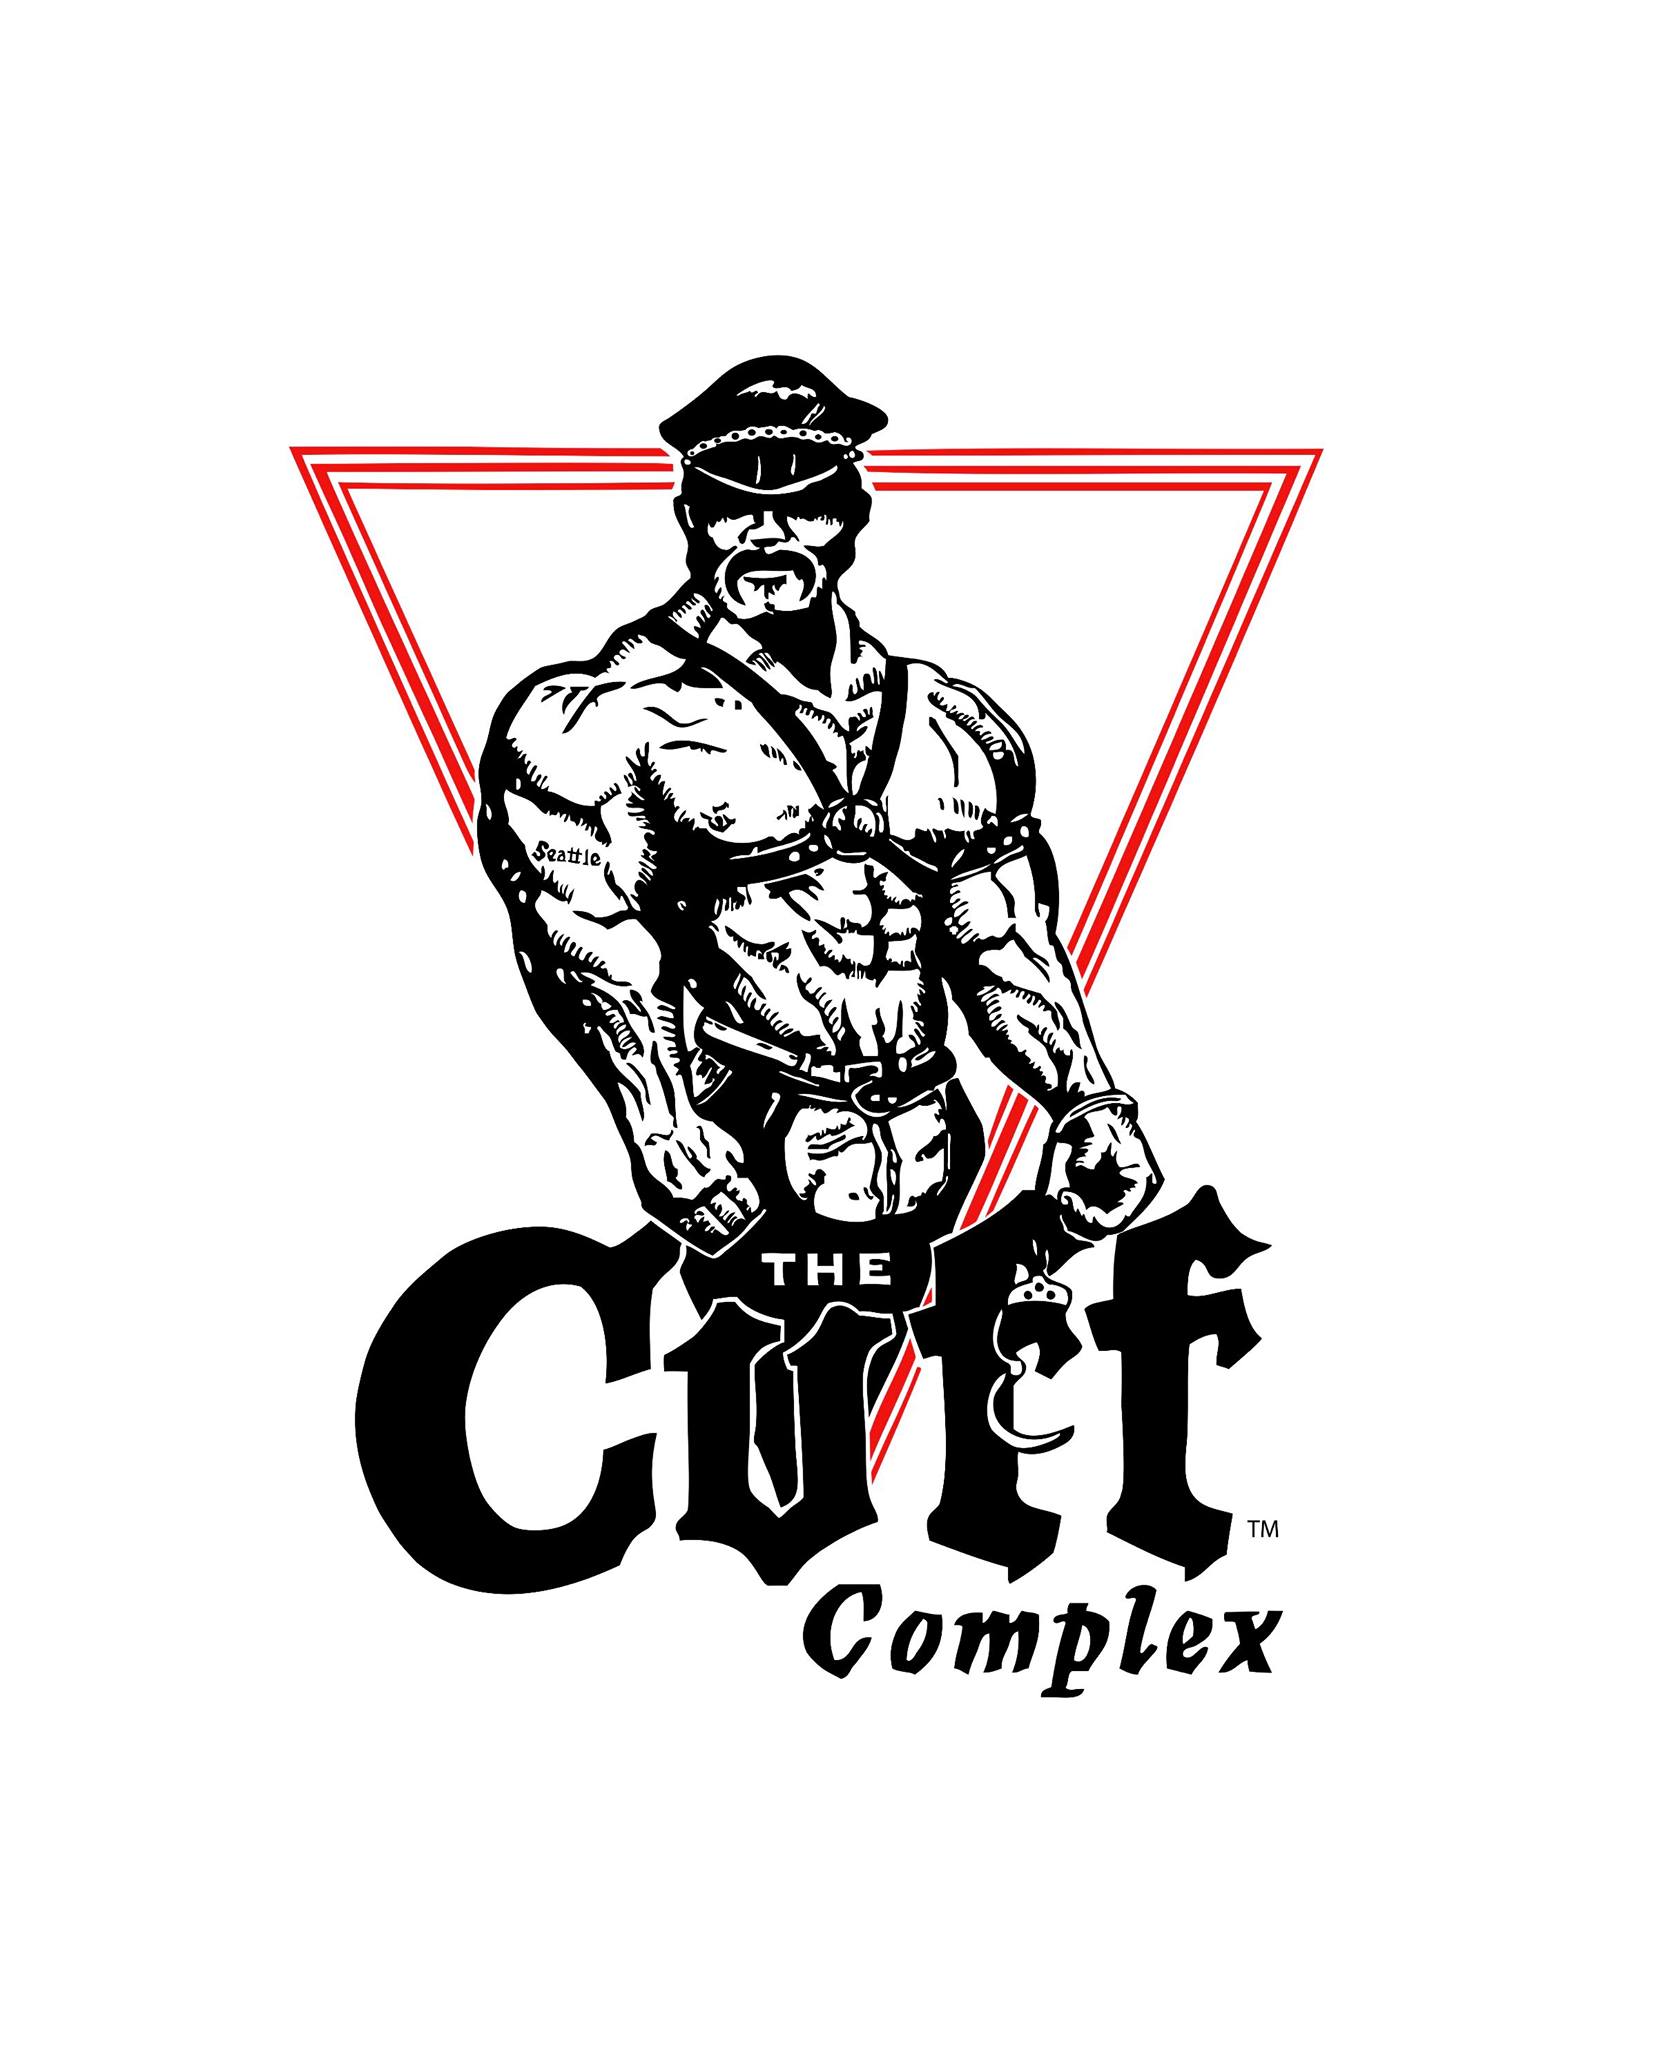 Company logo of The Cuff Complex